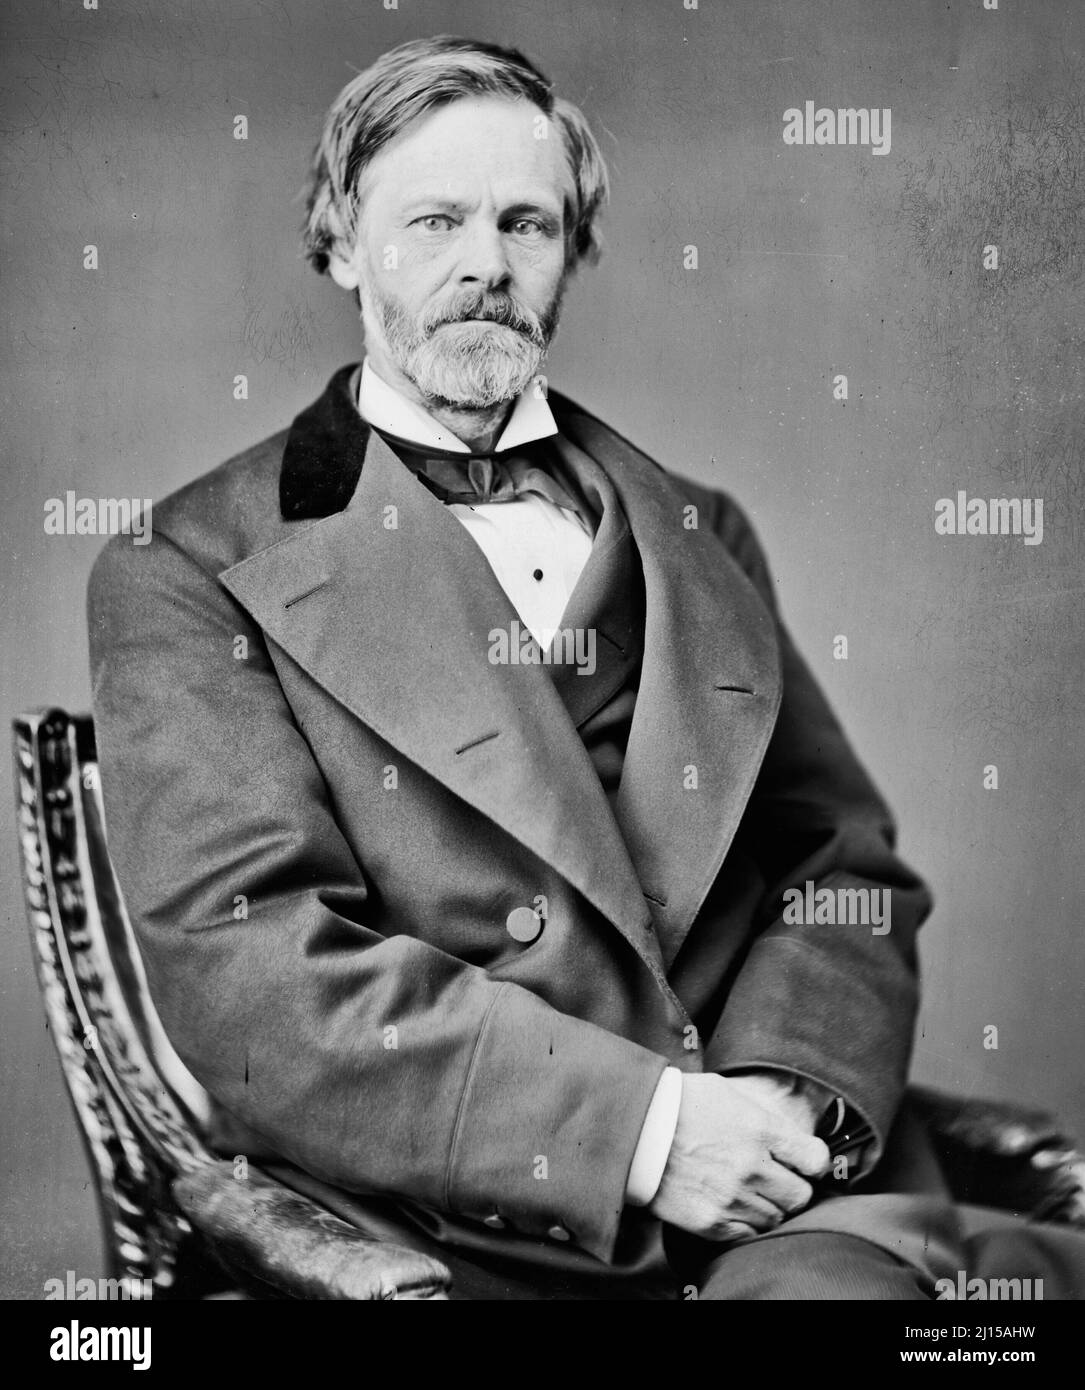 John Sherman entre 1865 et 1880 - John Sherman (10 mai 1823 – 22 octobre 1900) était un homme politique de l'État américain de l'Ohio pendant la guerre de Sécession américaine et jusqu'à la fin du XIXe siècle Banque D'Images